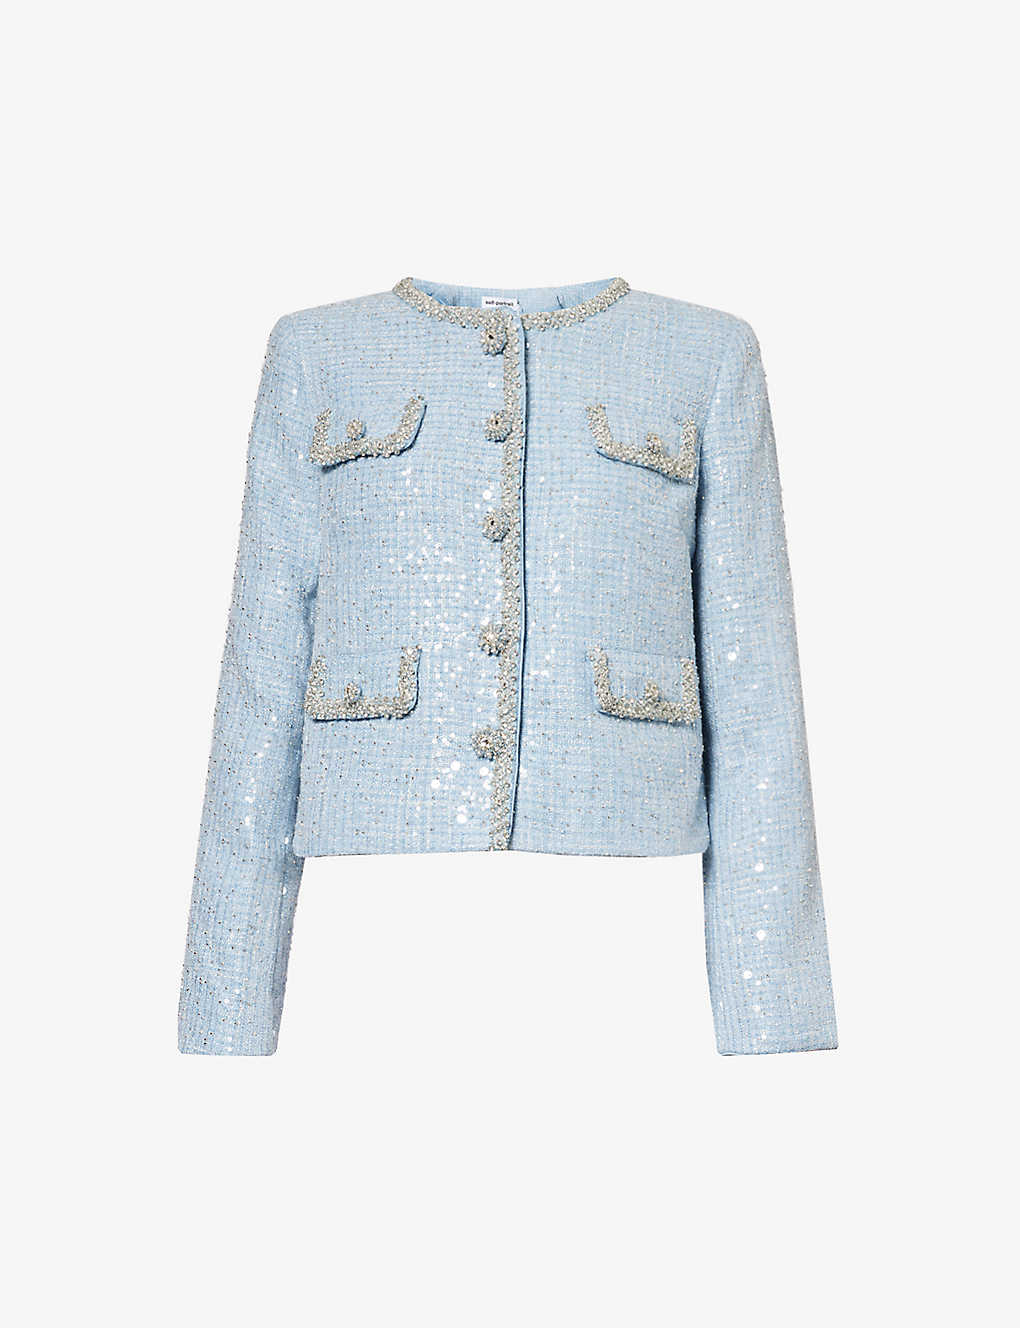 Shop Self-portrait Women's Blue Bouclé Texture Crystal-embellished Woven Jacket